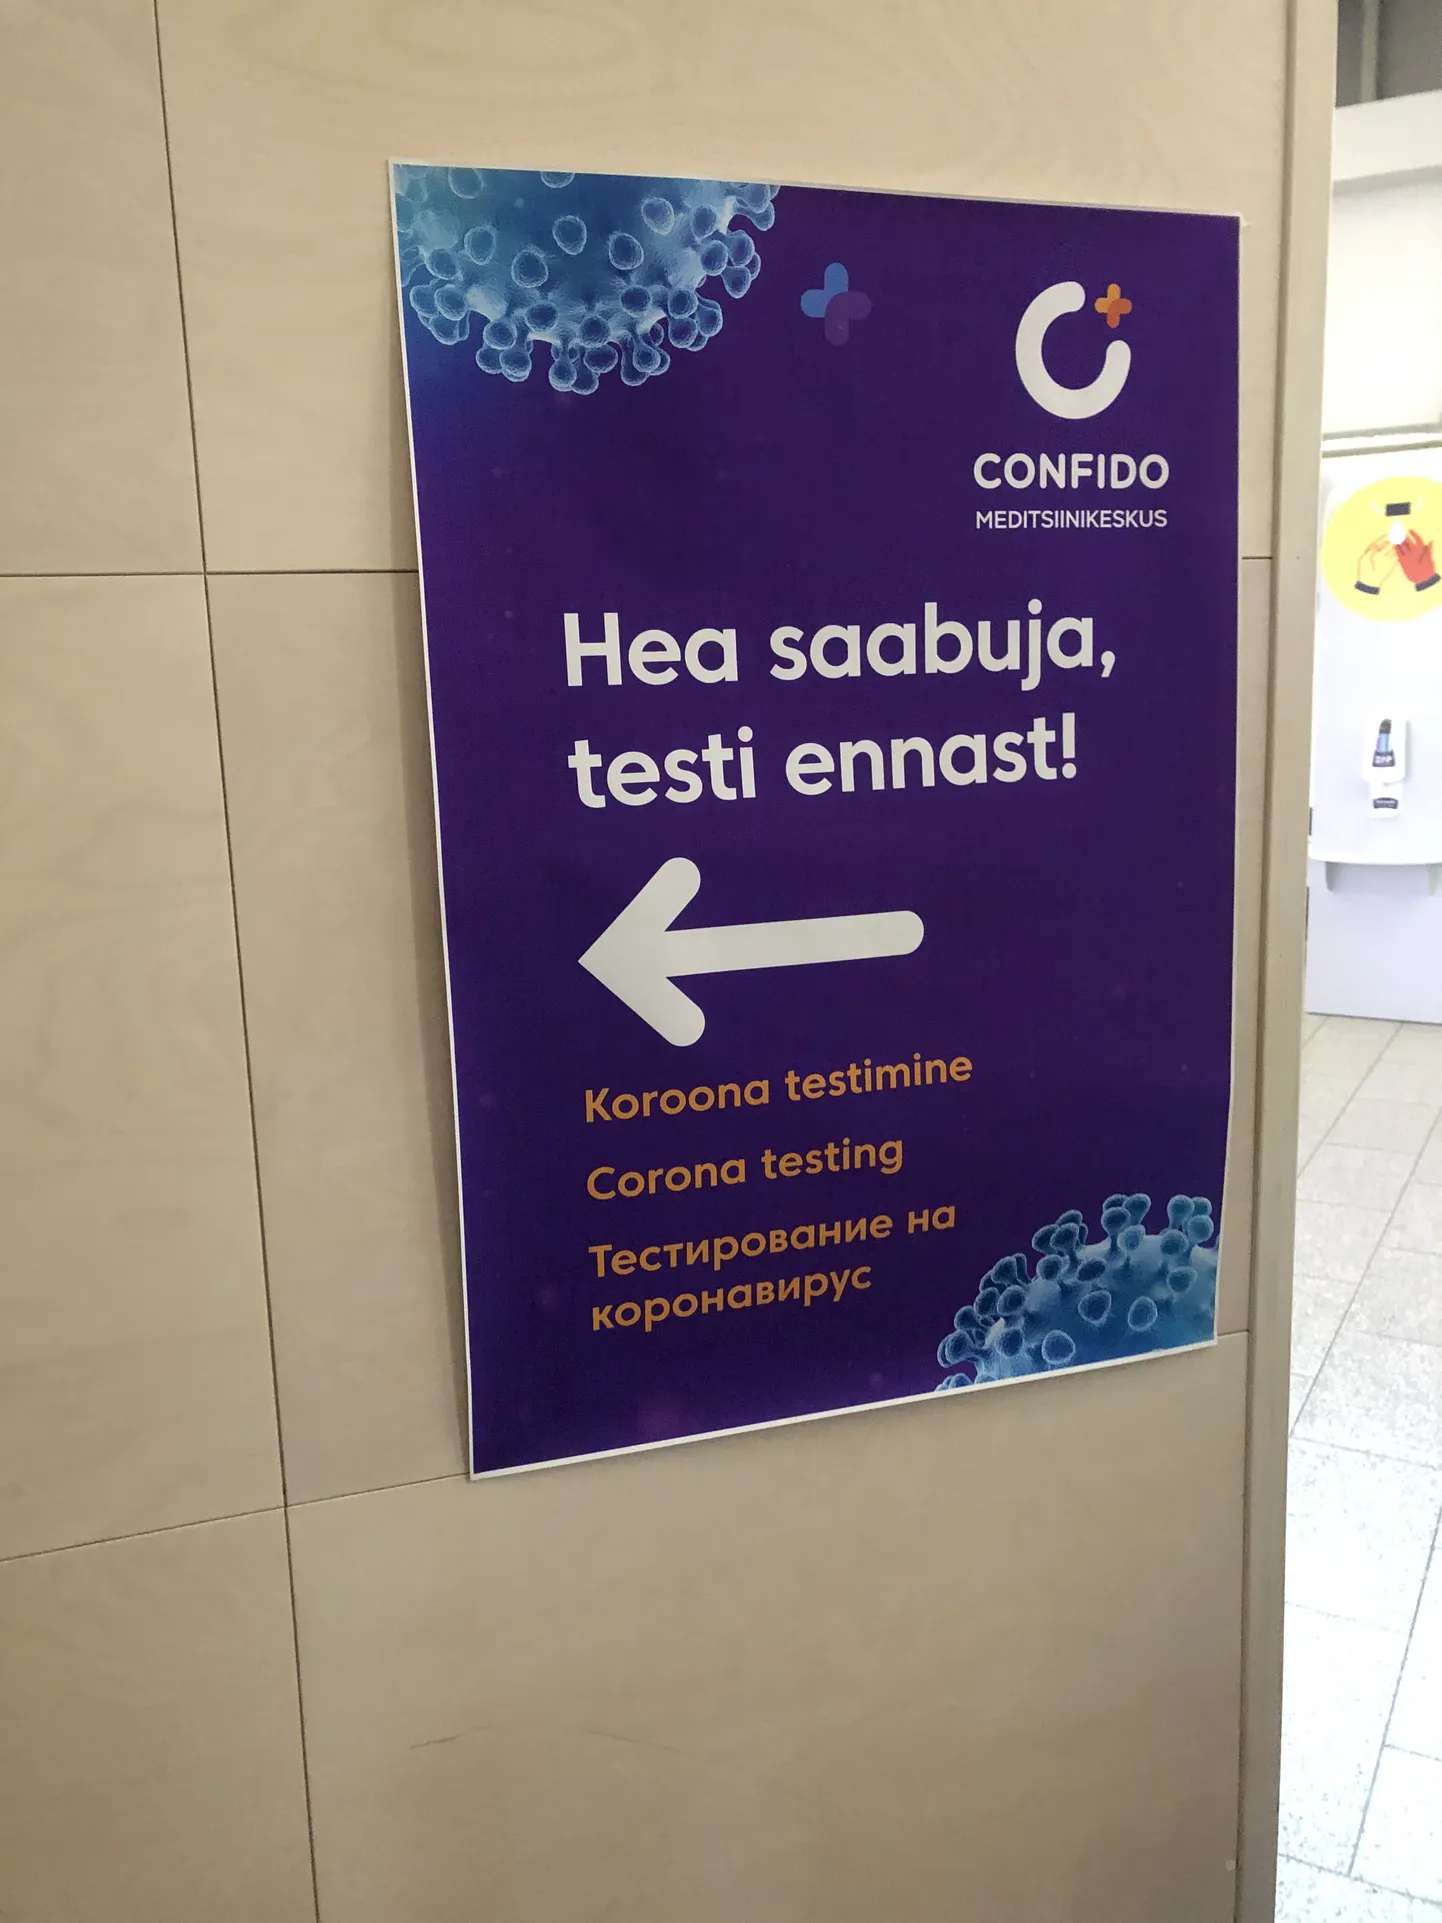 Koroonatesti tegemise võimalusest teavitav plakat Tallinna lennujaamas.